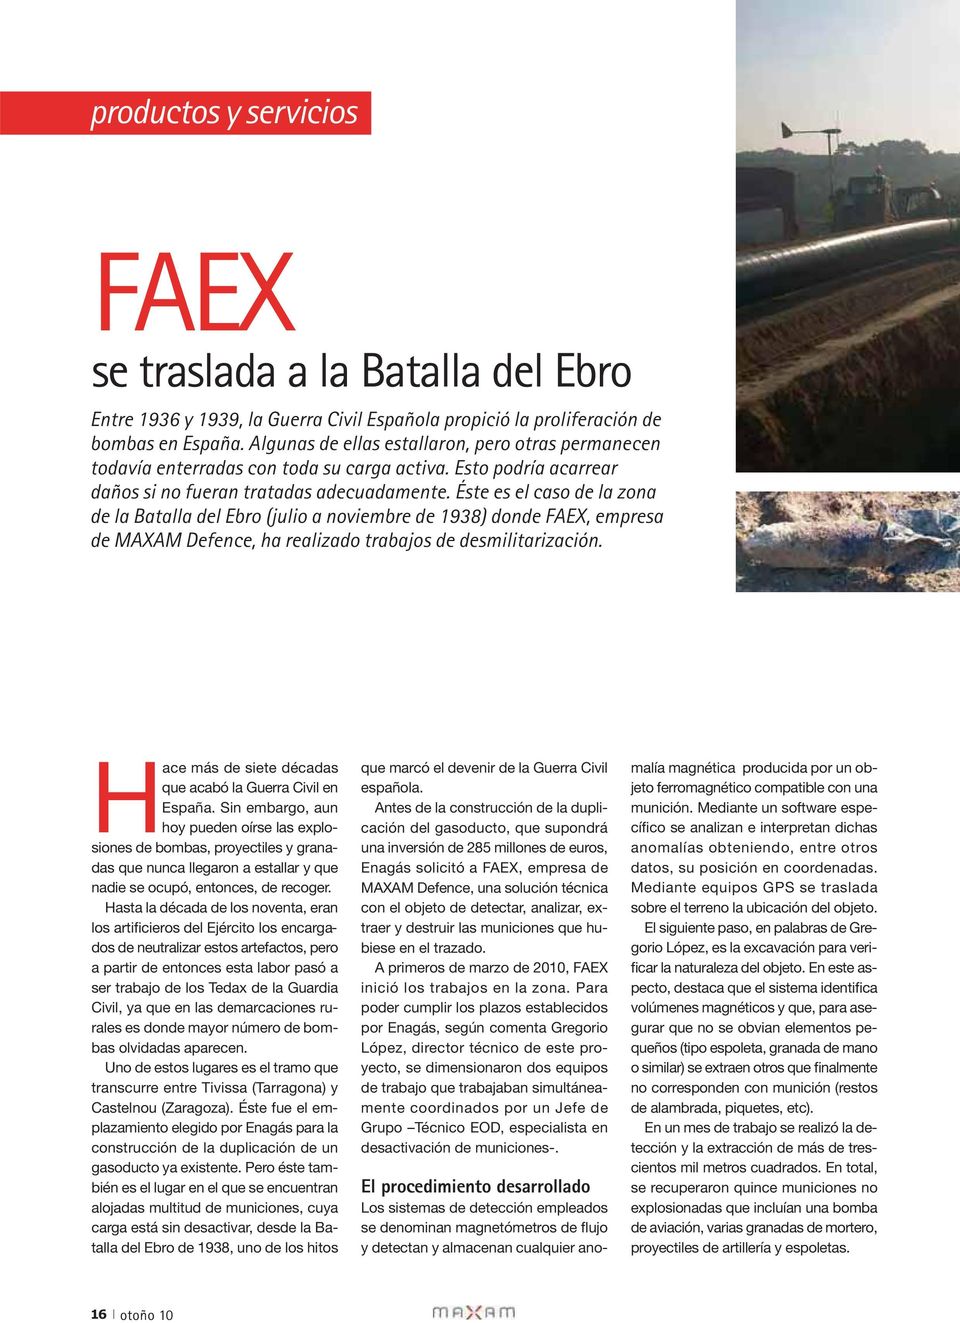 Éste es el caso de la zona de la Batalla del Ebro (julio a noviembre de 1938) donde FAEX, empresa de MAXAM Defence, ha realizado trabajos de desmilitarización.